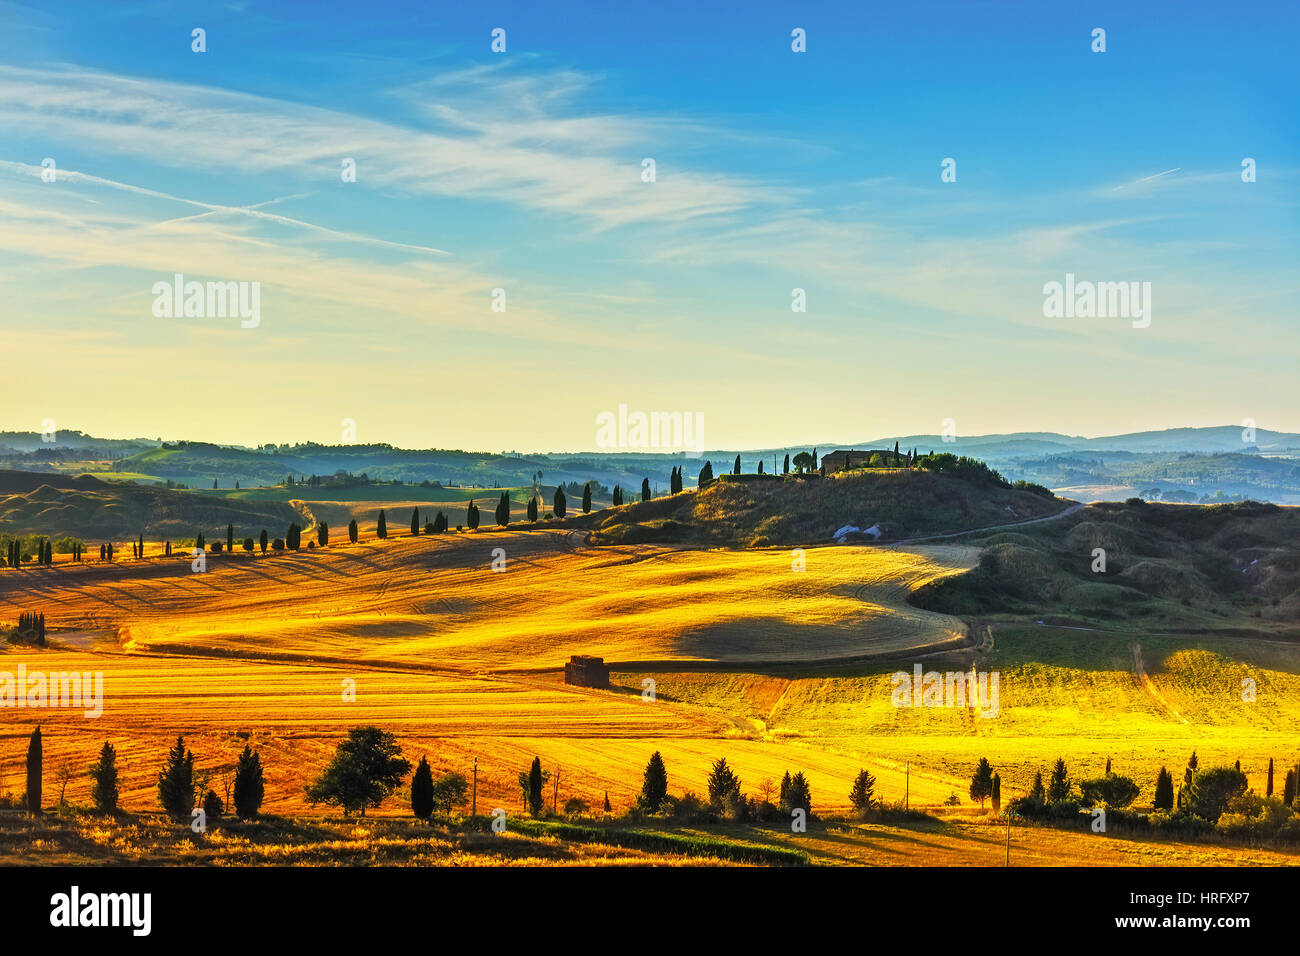 Toskana, Landschaft im ländlichen Raum. Landschaft-Bauernhof, Zypressen Bäumen und grünen Wiese. Italien, Europa. Stockfoto